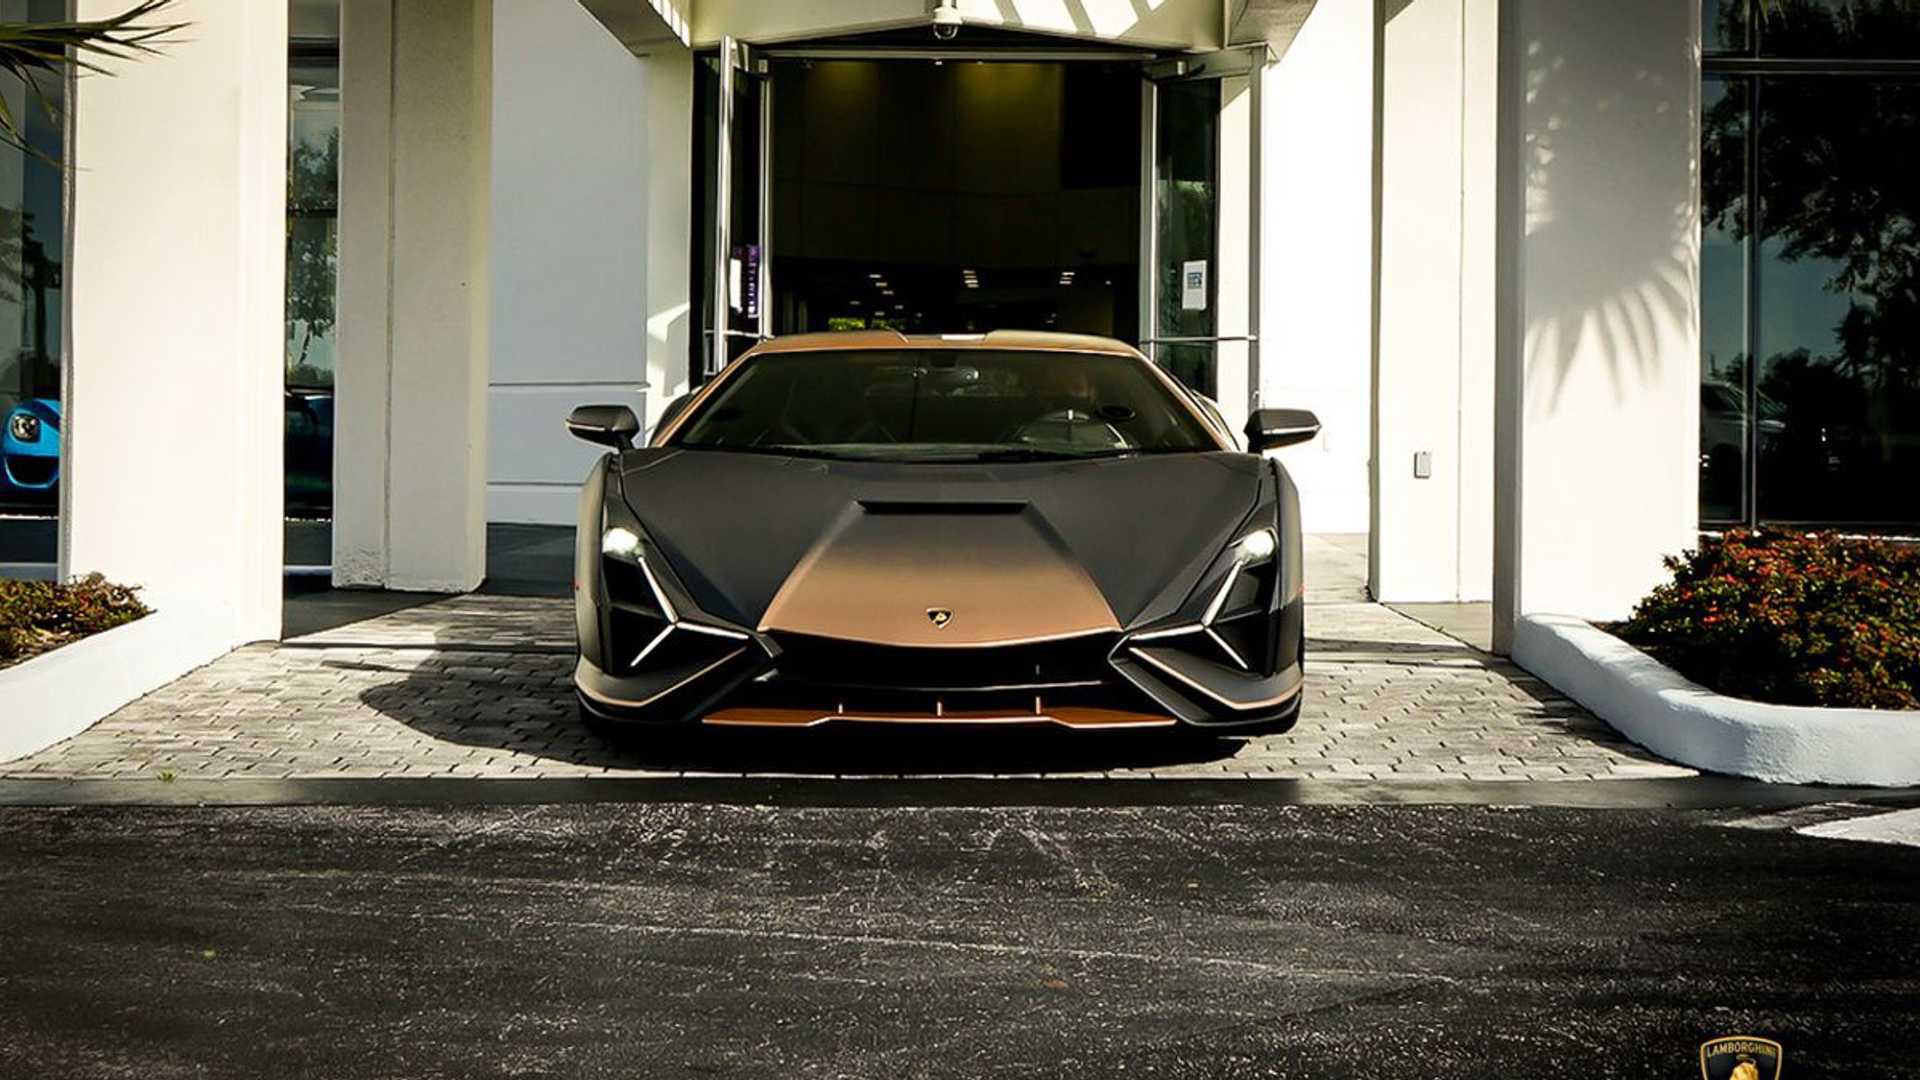 2021 Lamborghini Sián FKP 37